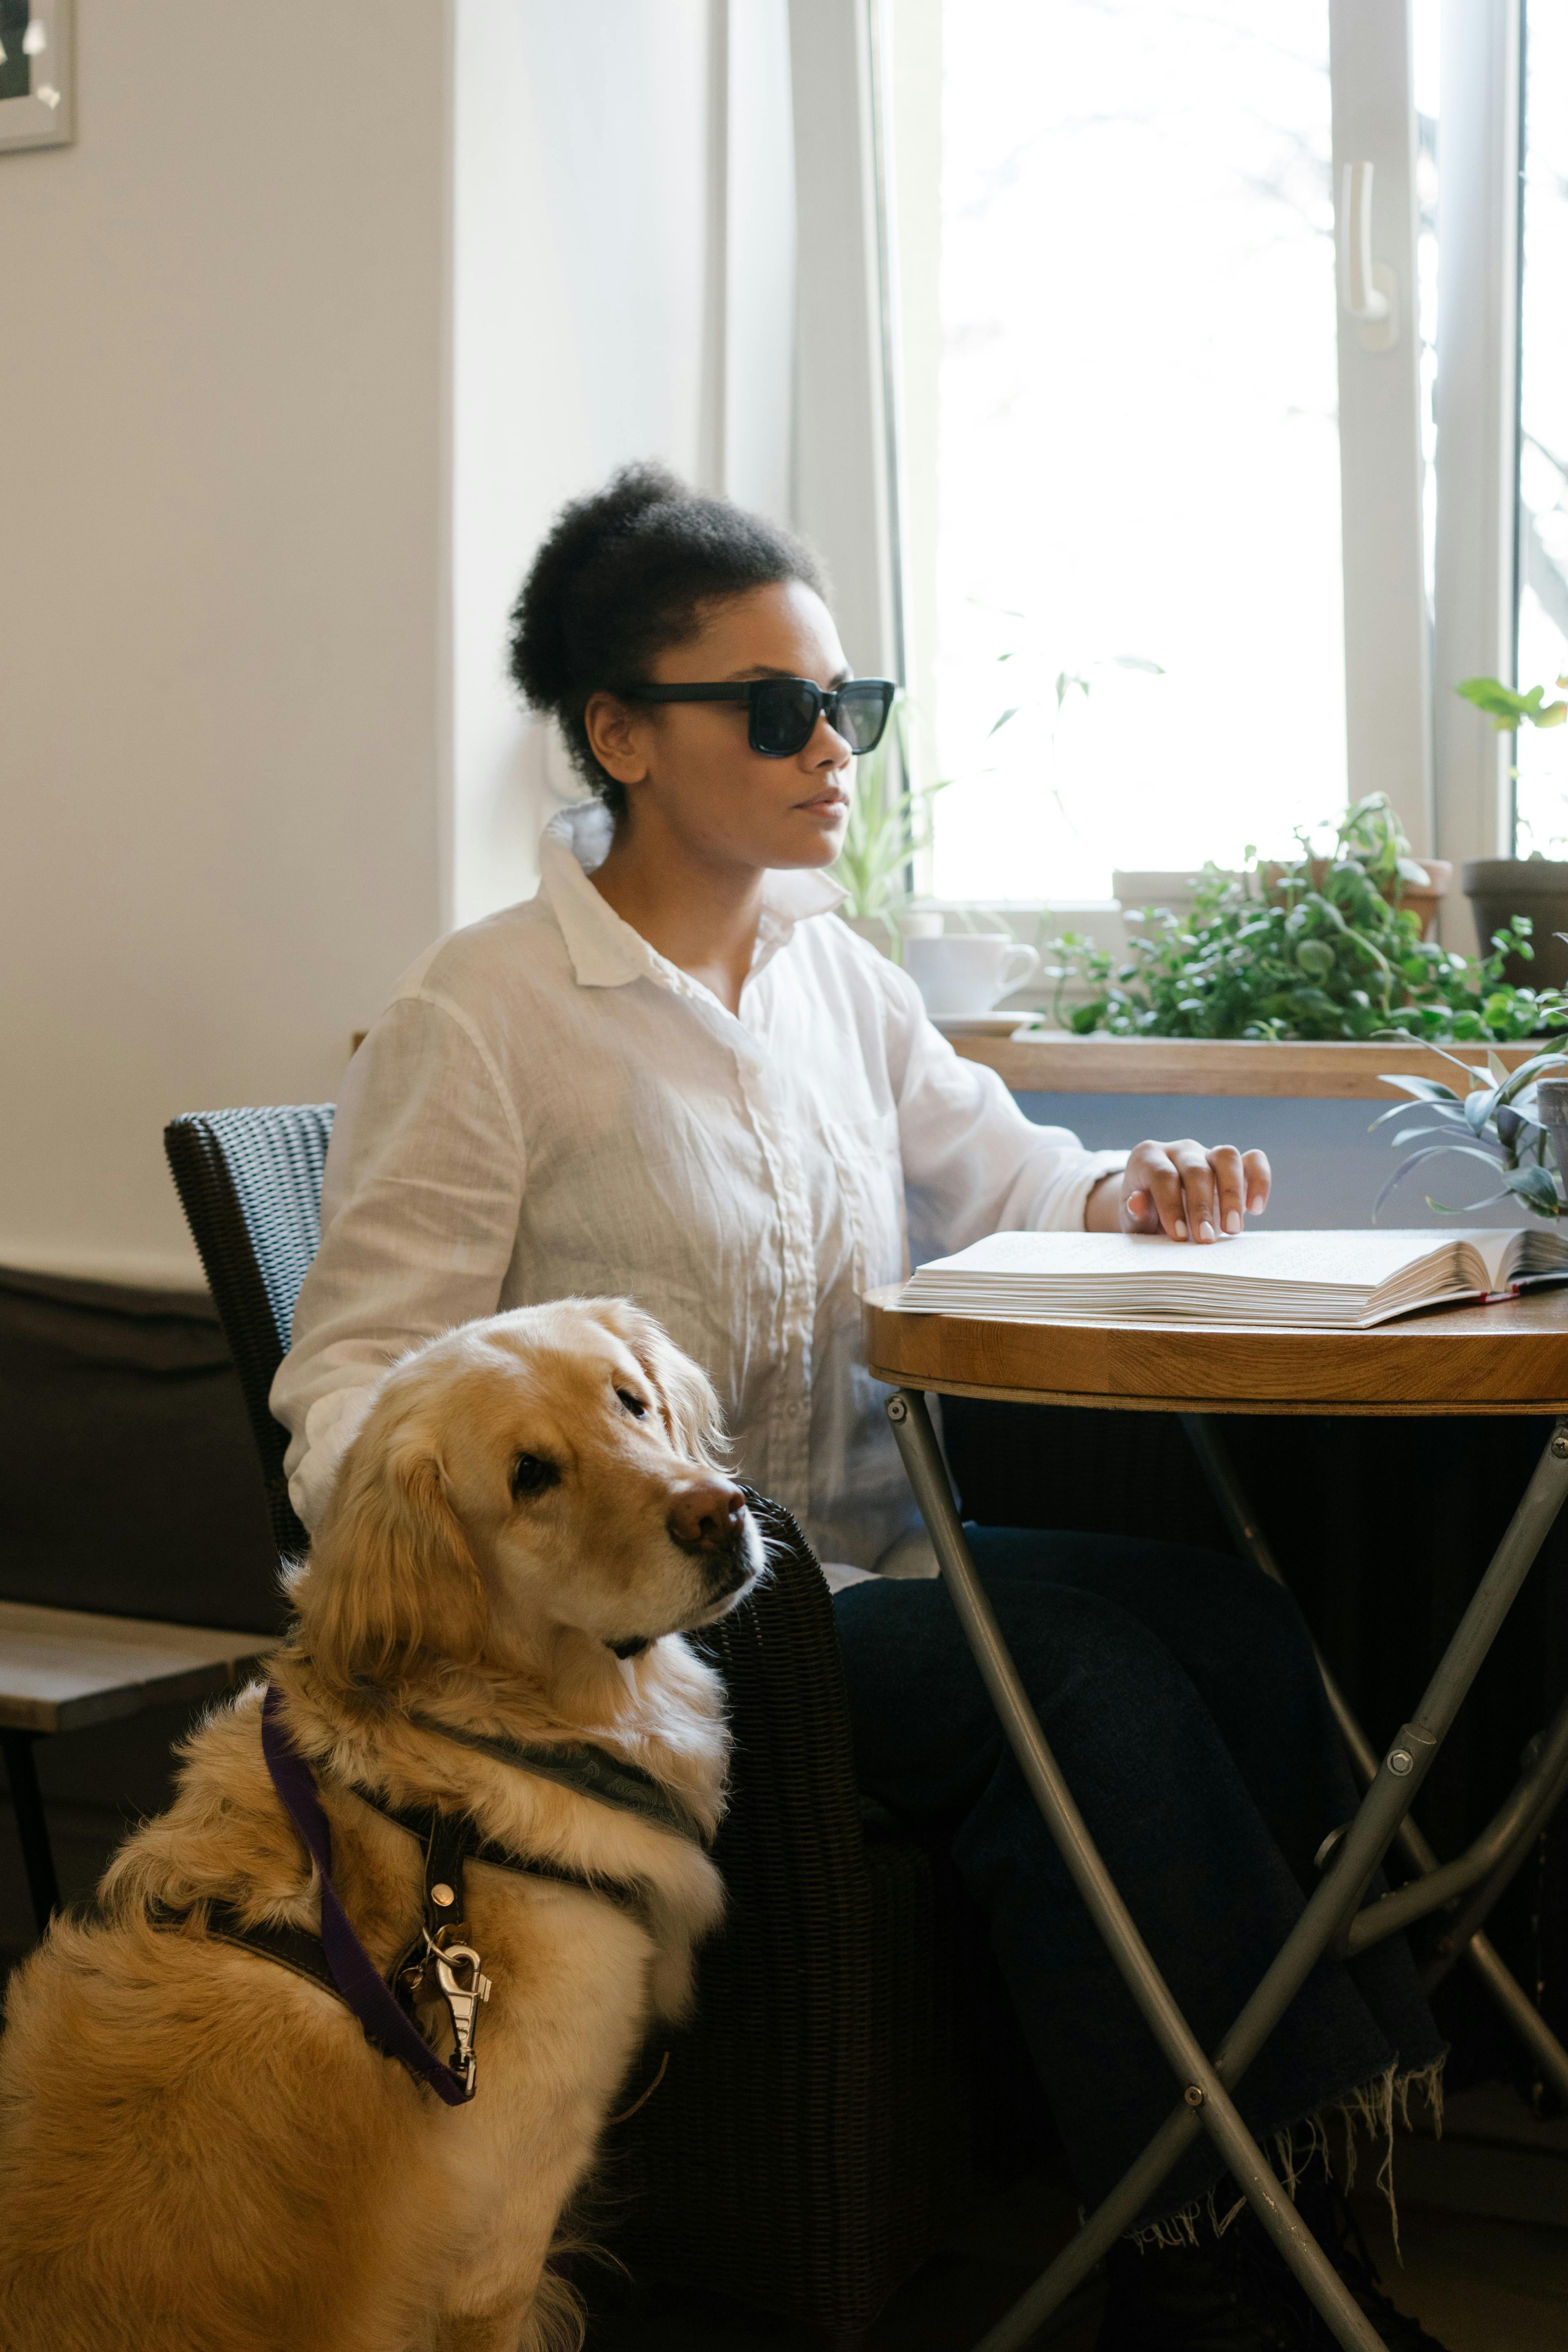 Eine blinde Frau liest Blindenschrift in einem Café | Quelle: Pexels